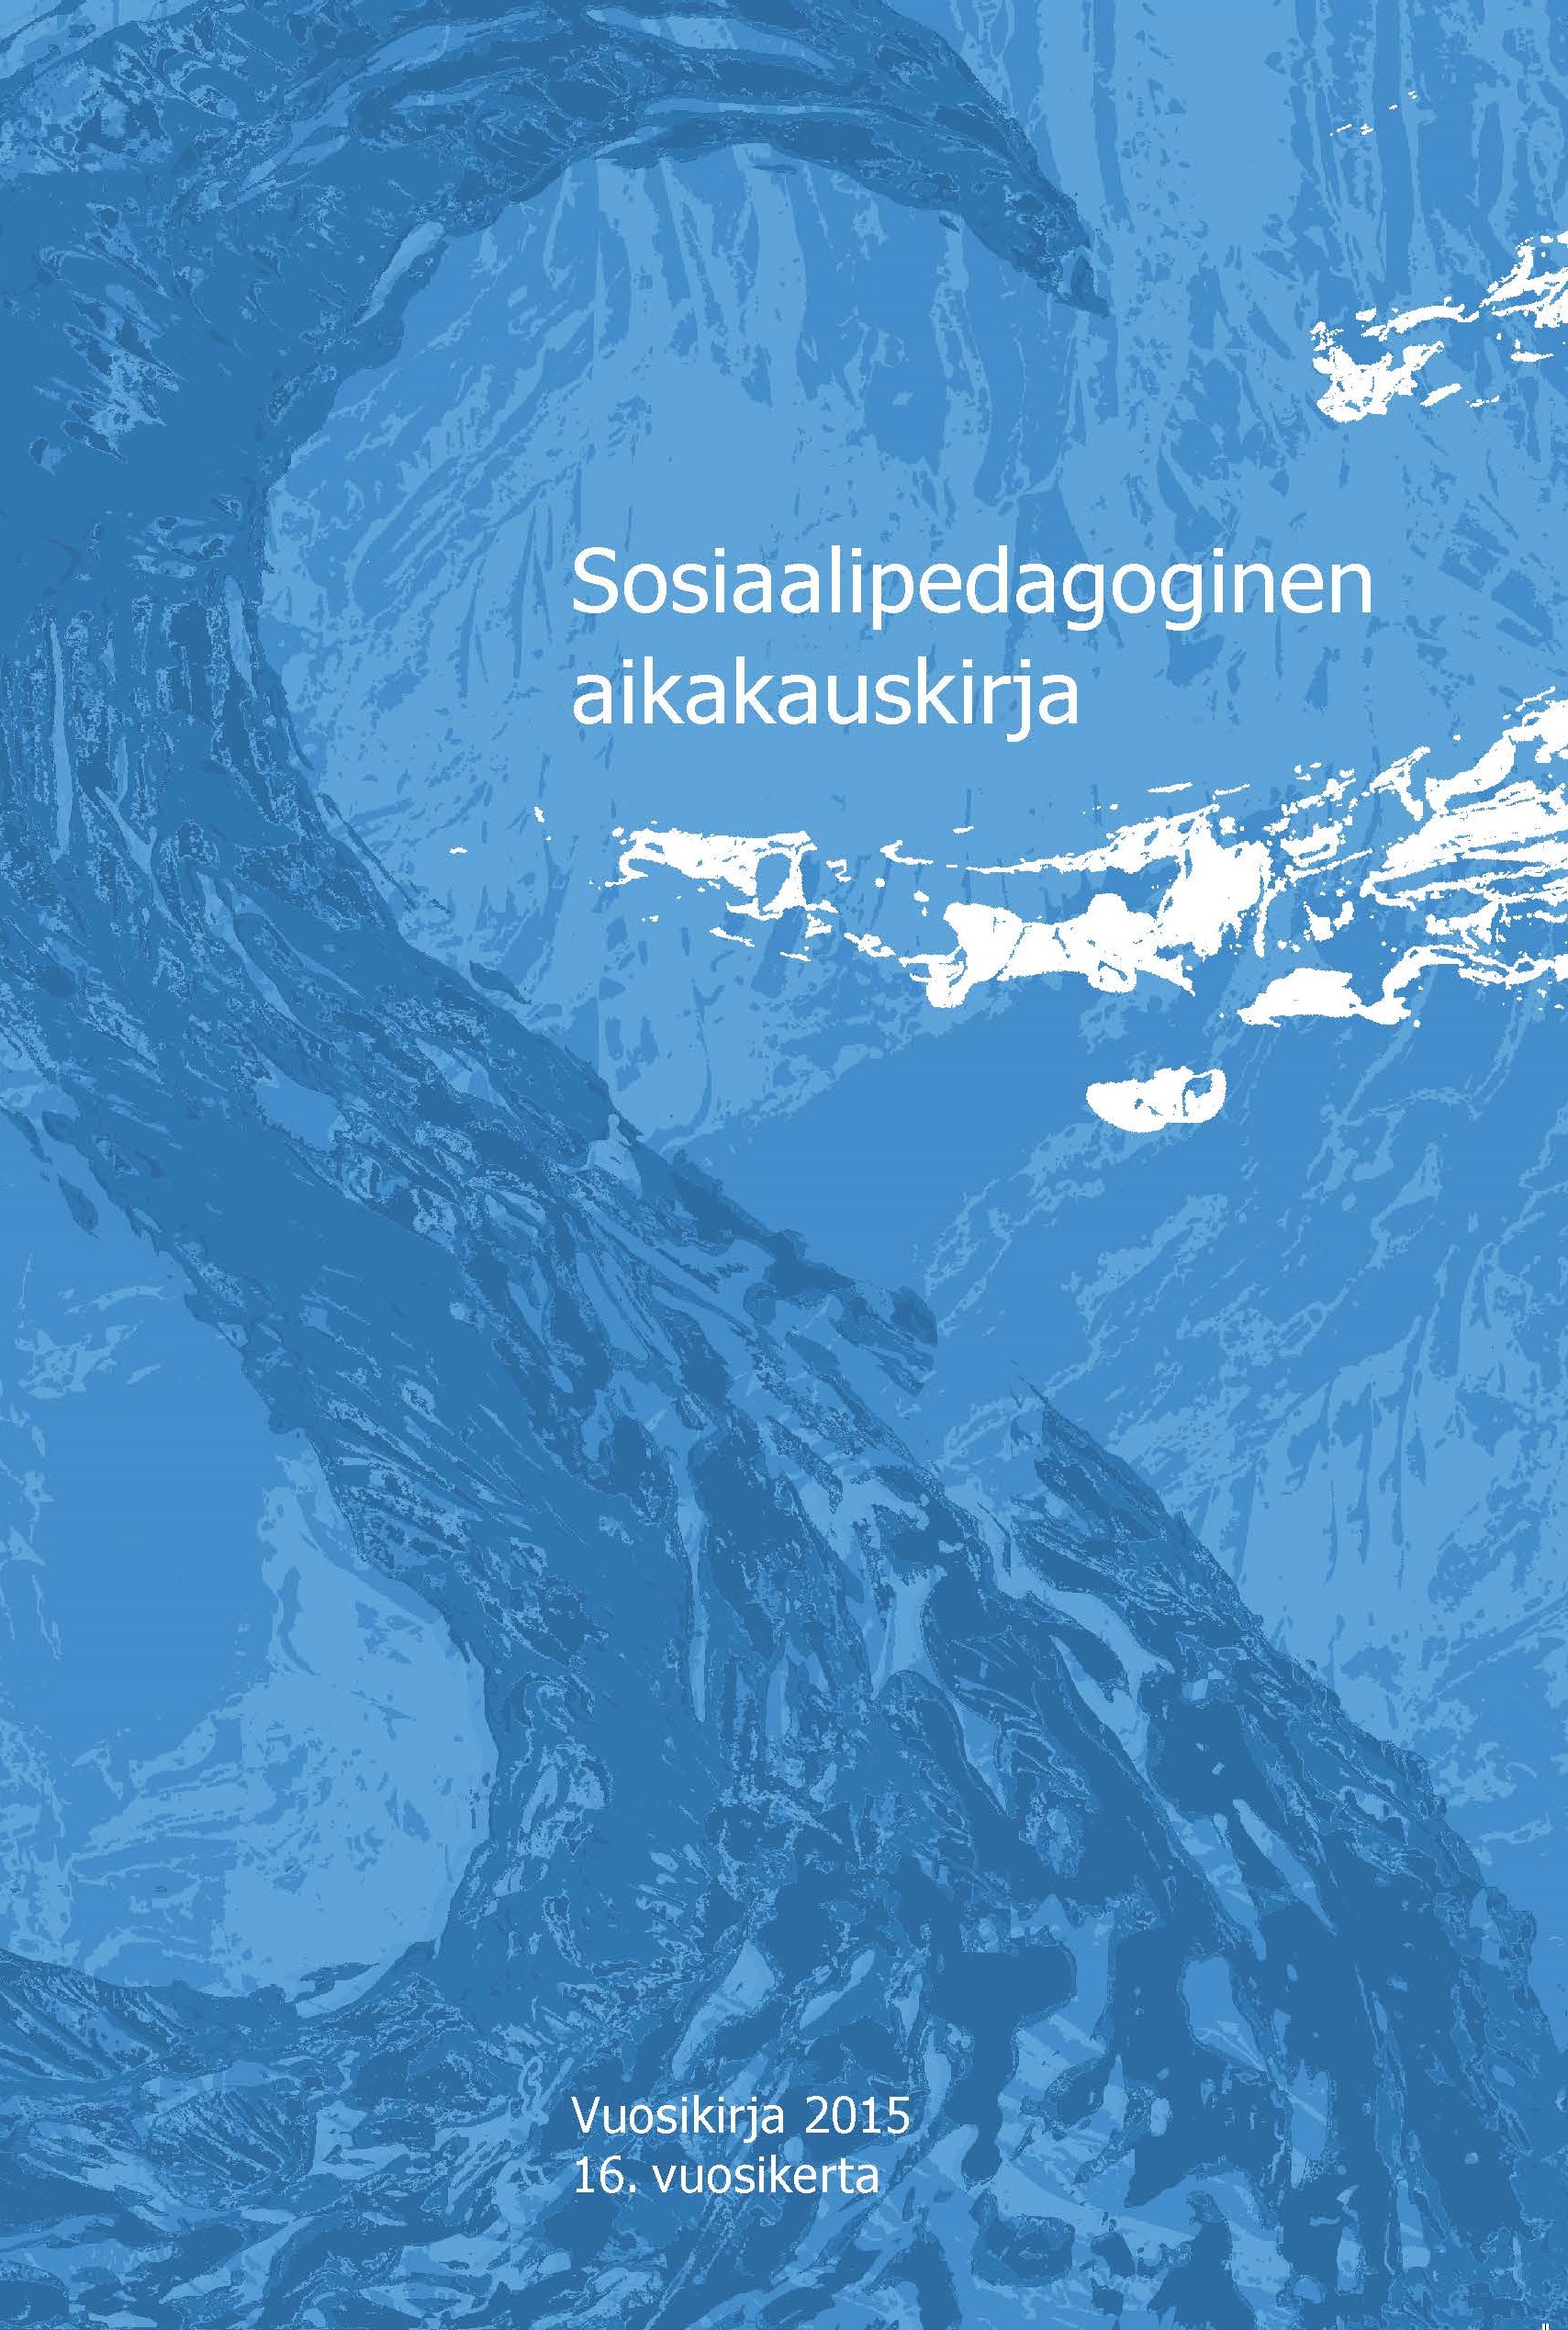 					Visa Vol 16 (2015): Sosiaalipedagoginen aikakauskirja, vuosikirja 2015
				